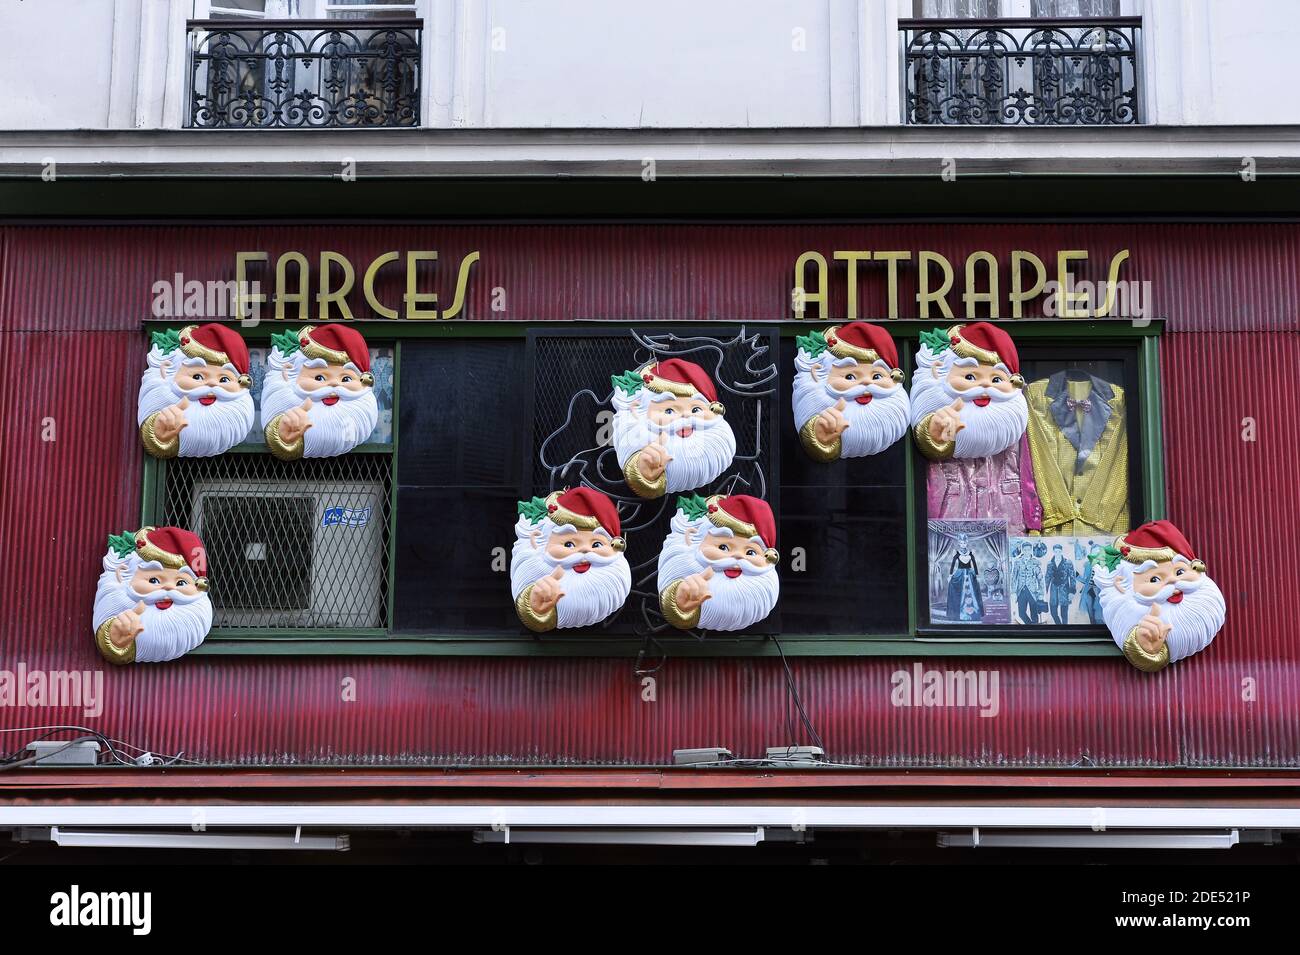 Streich- und Catch-Laden - Blick auf die Straße - Paris - Frankreich Stockfoto